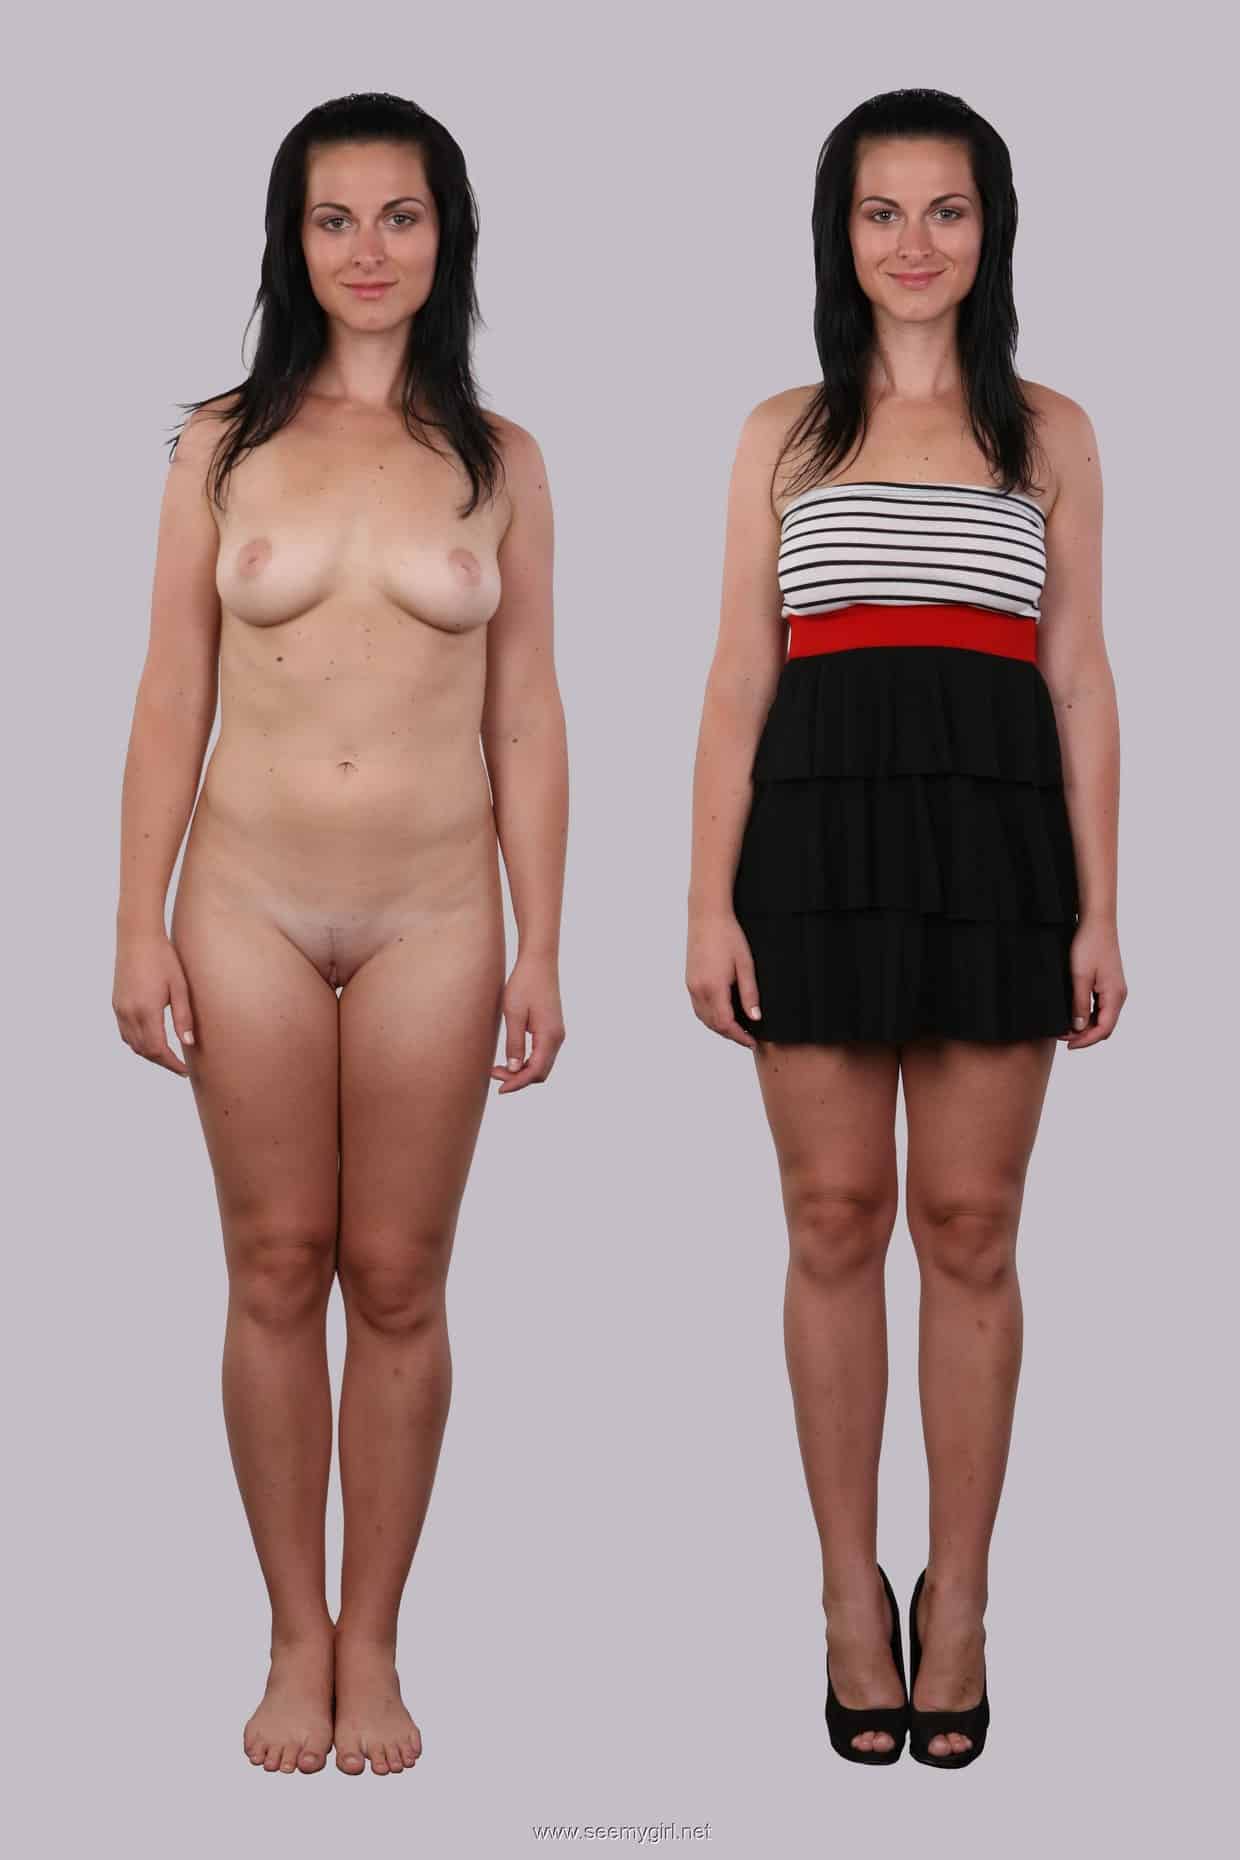 Les photomontages de Lisa de femmes habillées et déshabillées sont de retour !!!